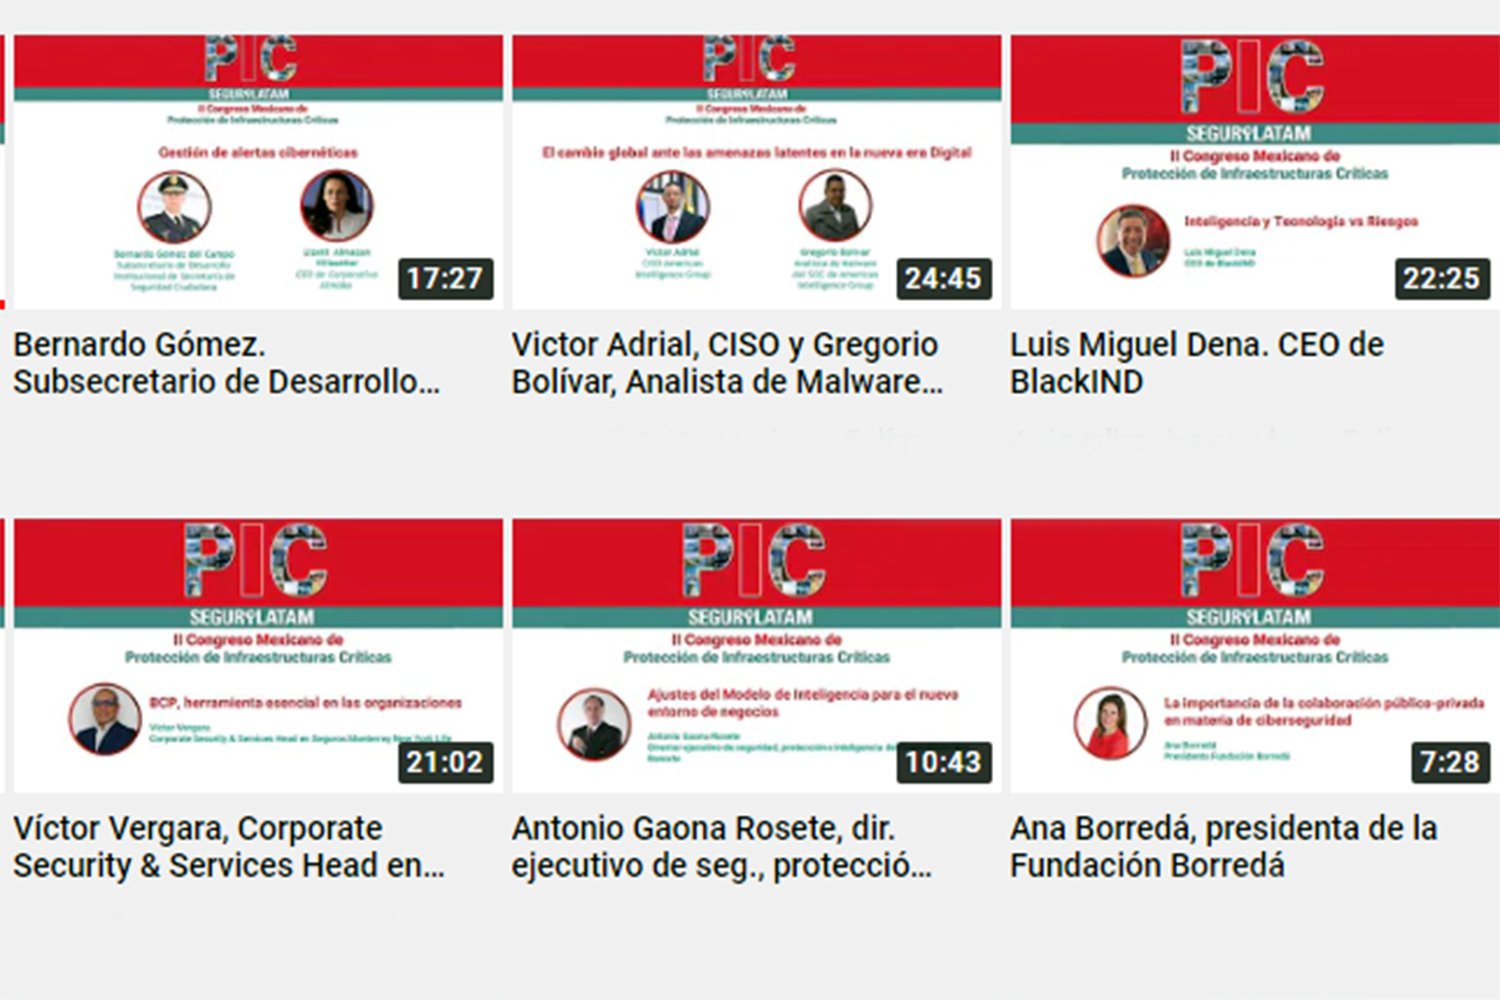 Vídeos del II Congreso Mexicano de Protección de Infraestructuras Críticas